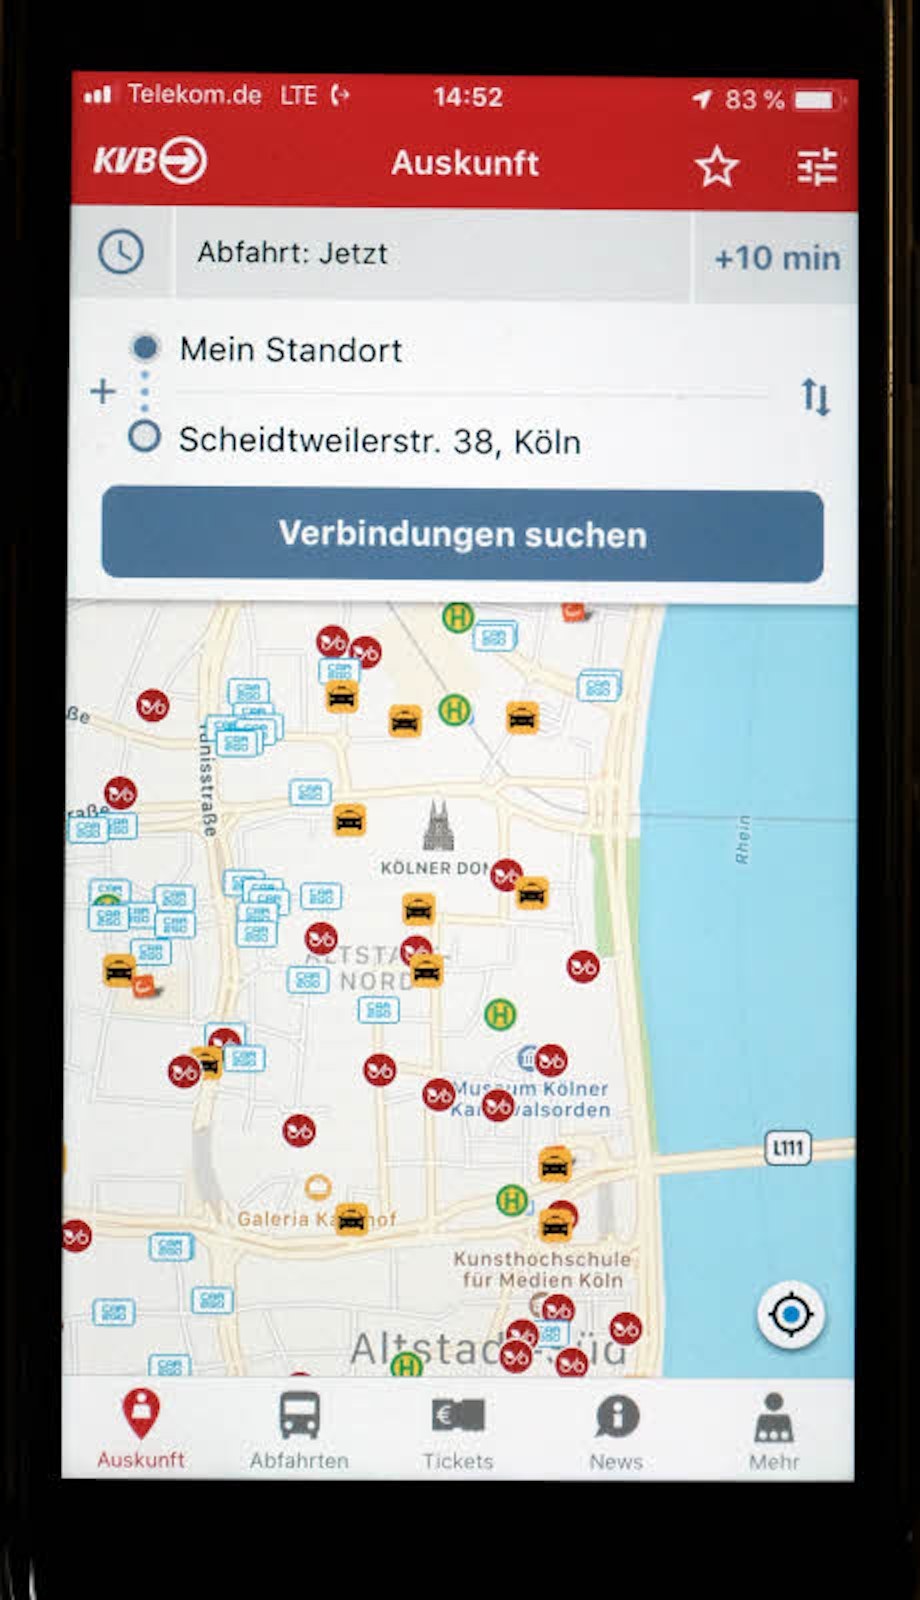 Leihräder, Car-Sharing, Taxiruf sowie Regional und Fernverkehr können mit der App verknüpft werden.